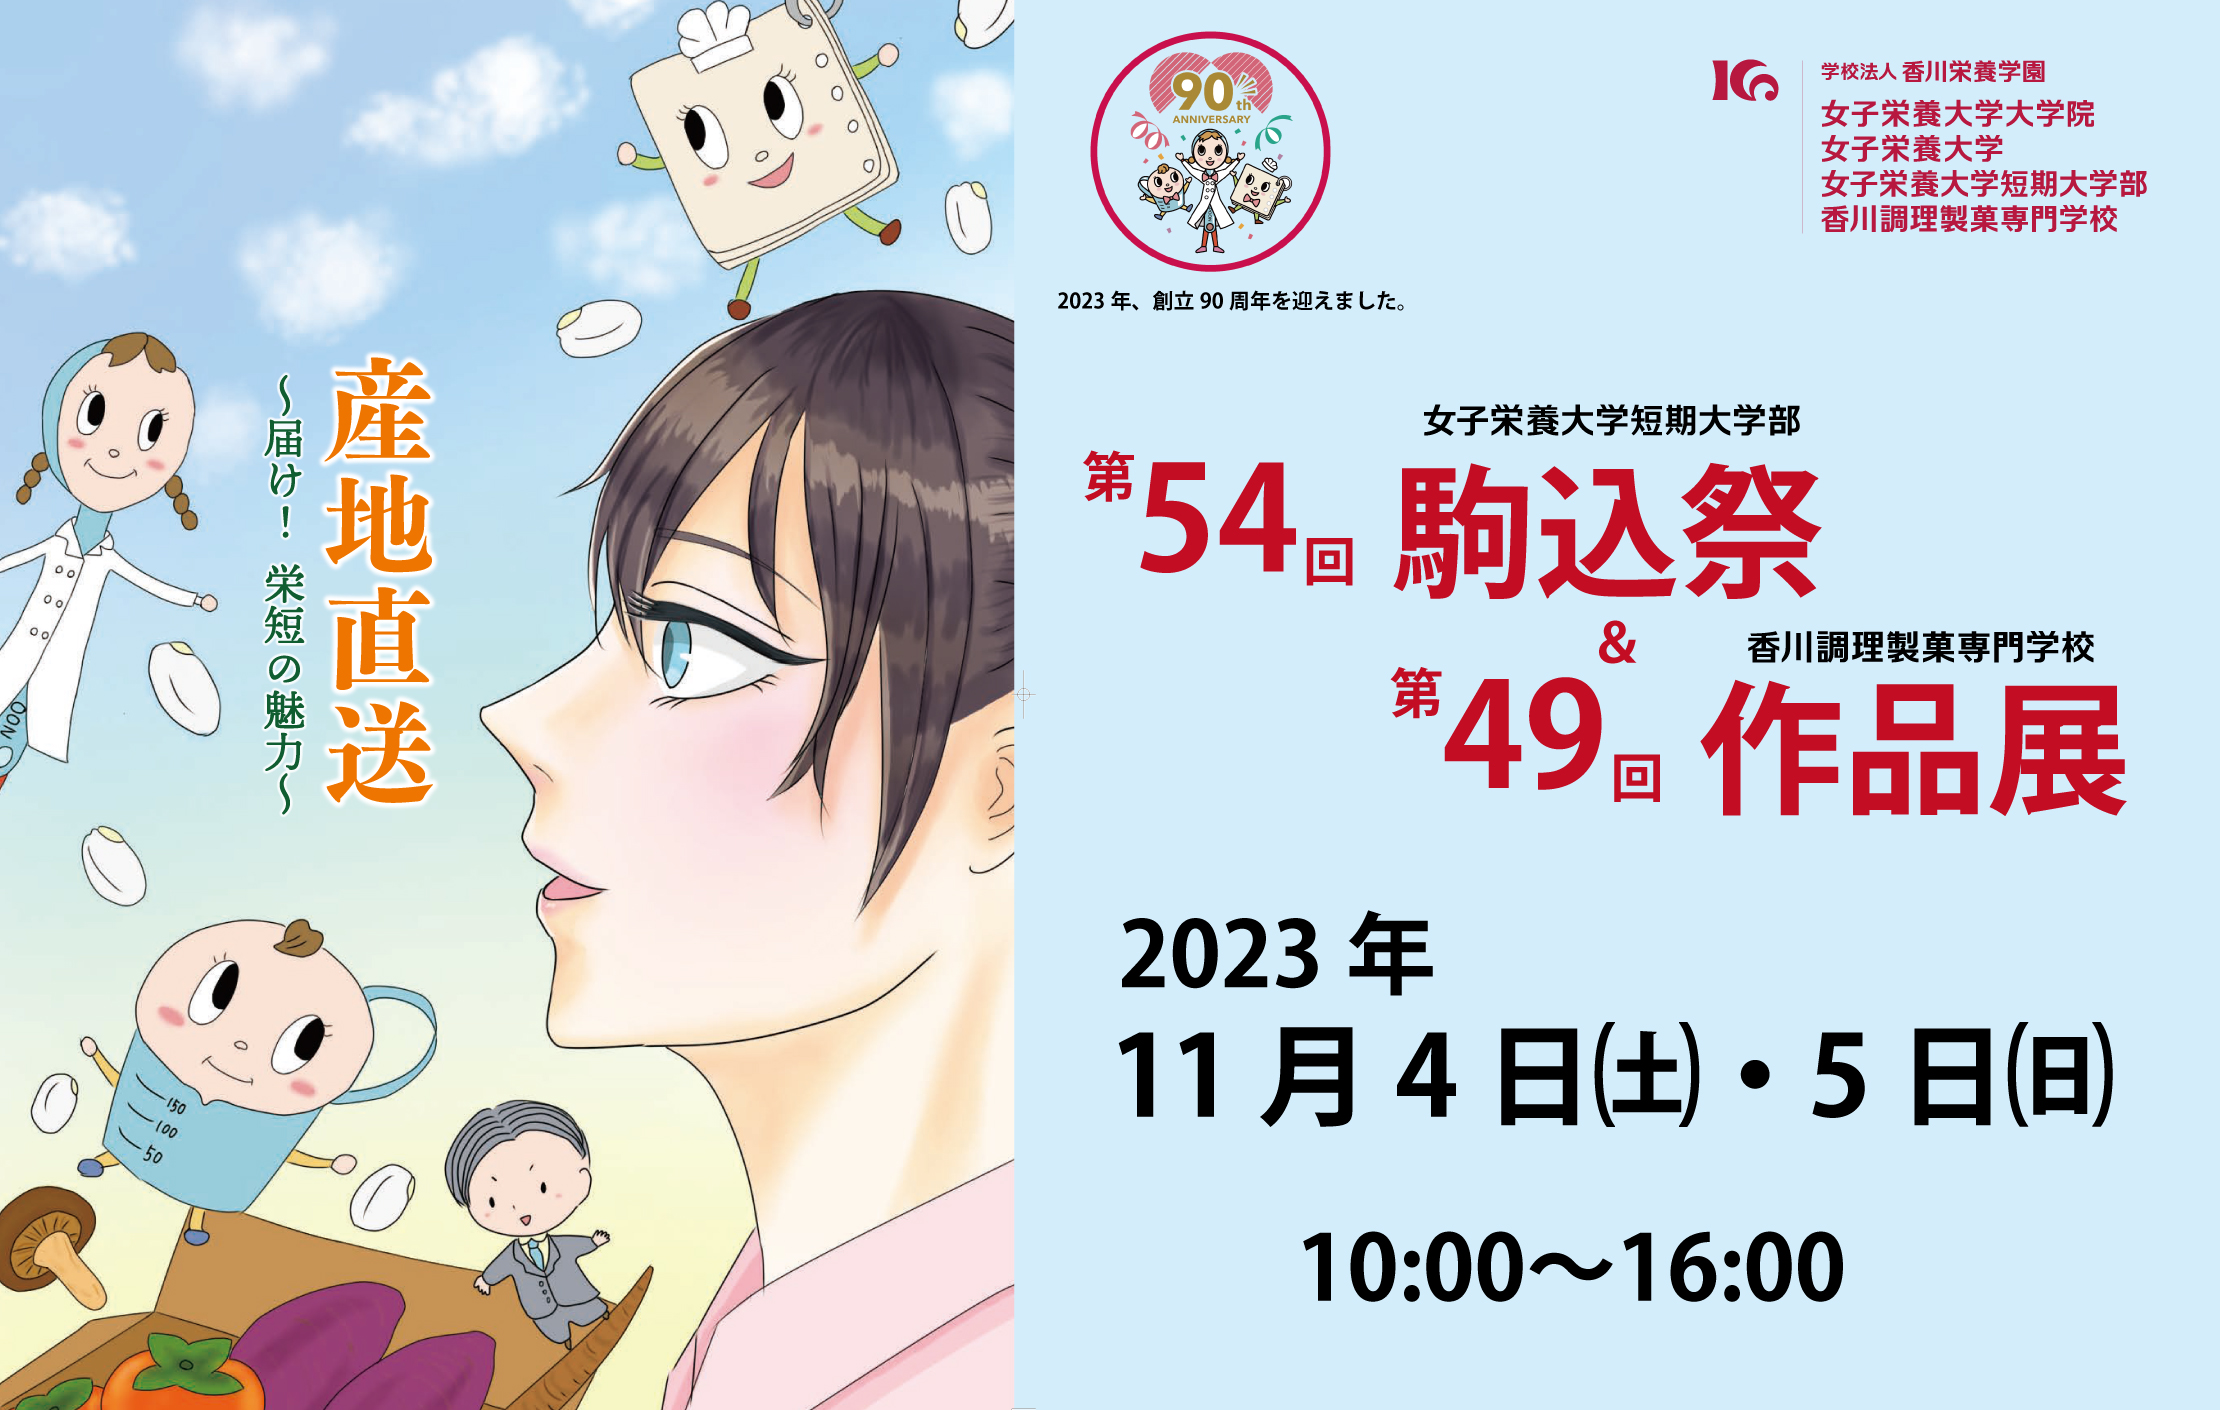 11月4日（土）・5日（日）、「第54回駒込祭・第49回作品展」を開催